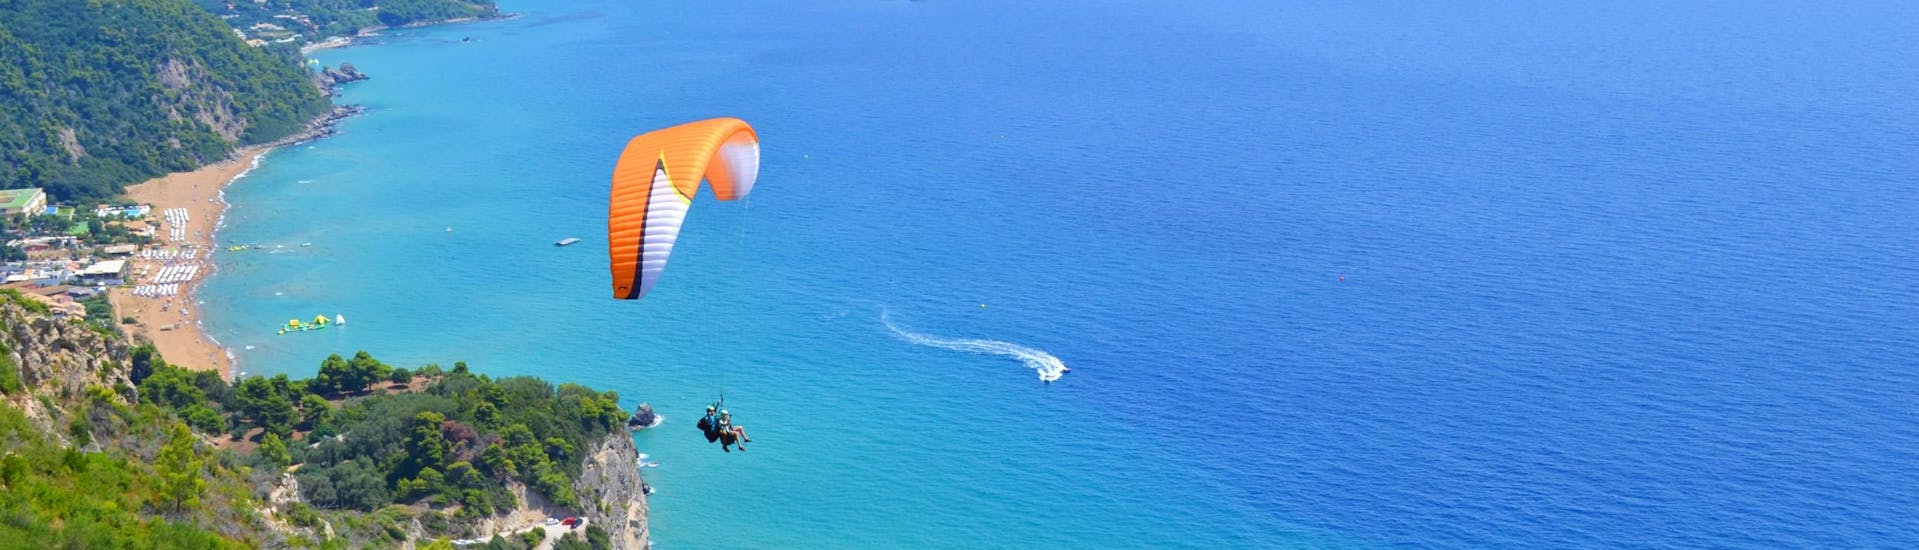 Beim Tandem Paragliding in Korfu gleiten ein Tandempilot von Corfu Paragliding und sein Passagier über das türkisfarbene Wasser des Ionischen Meeres.